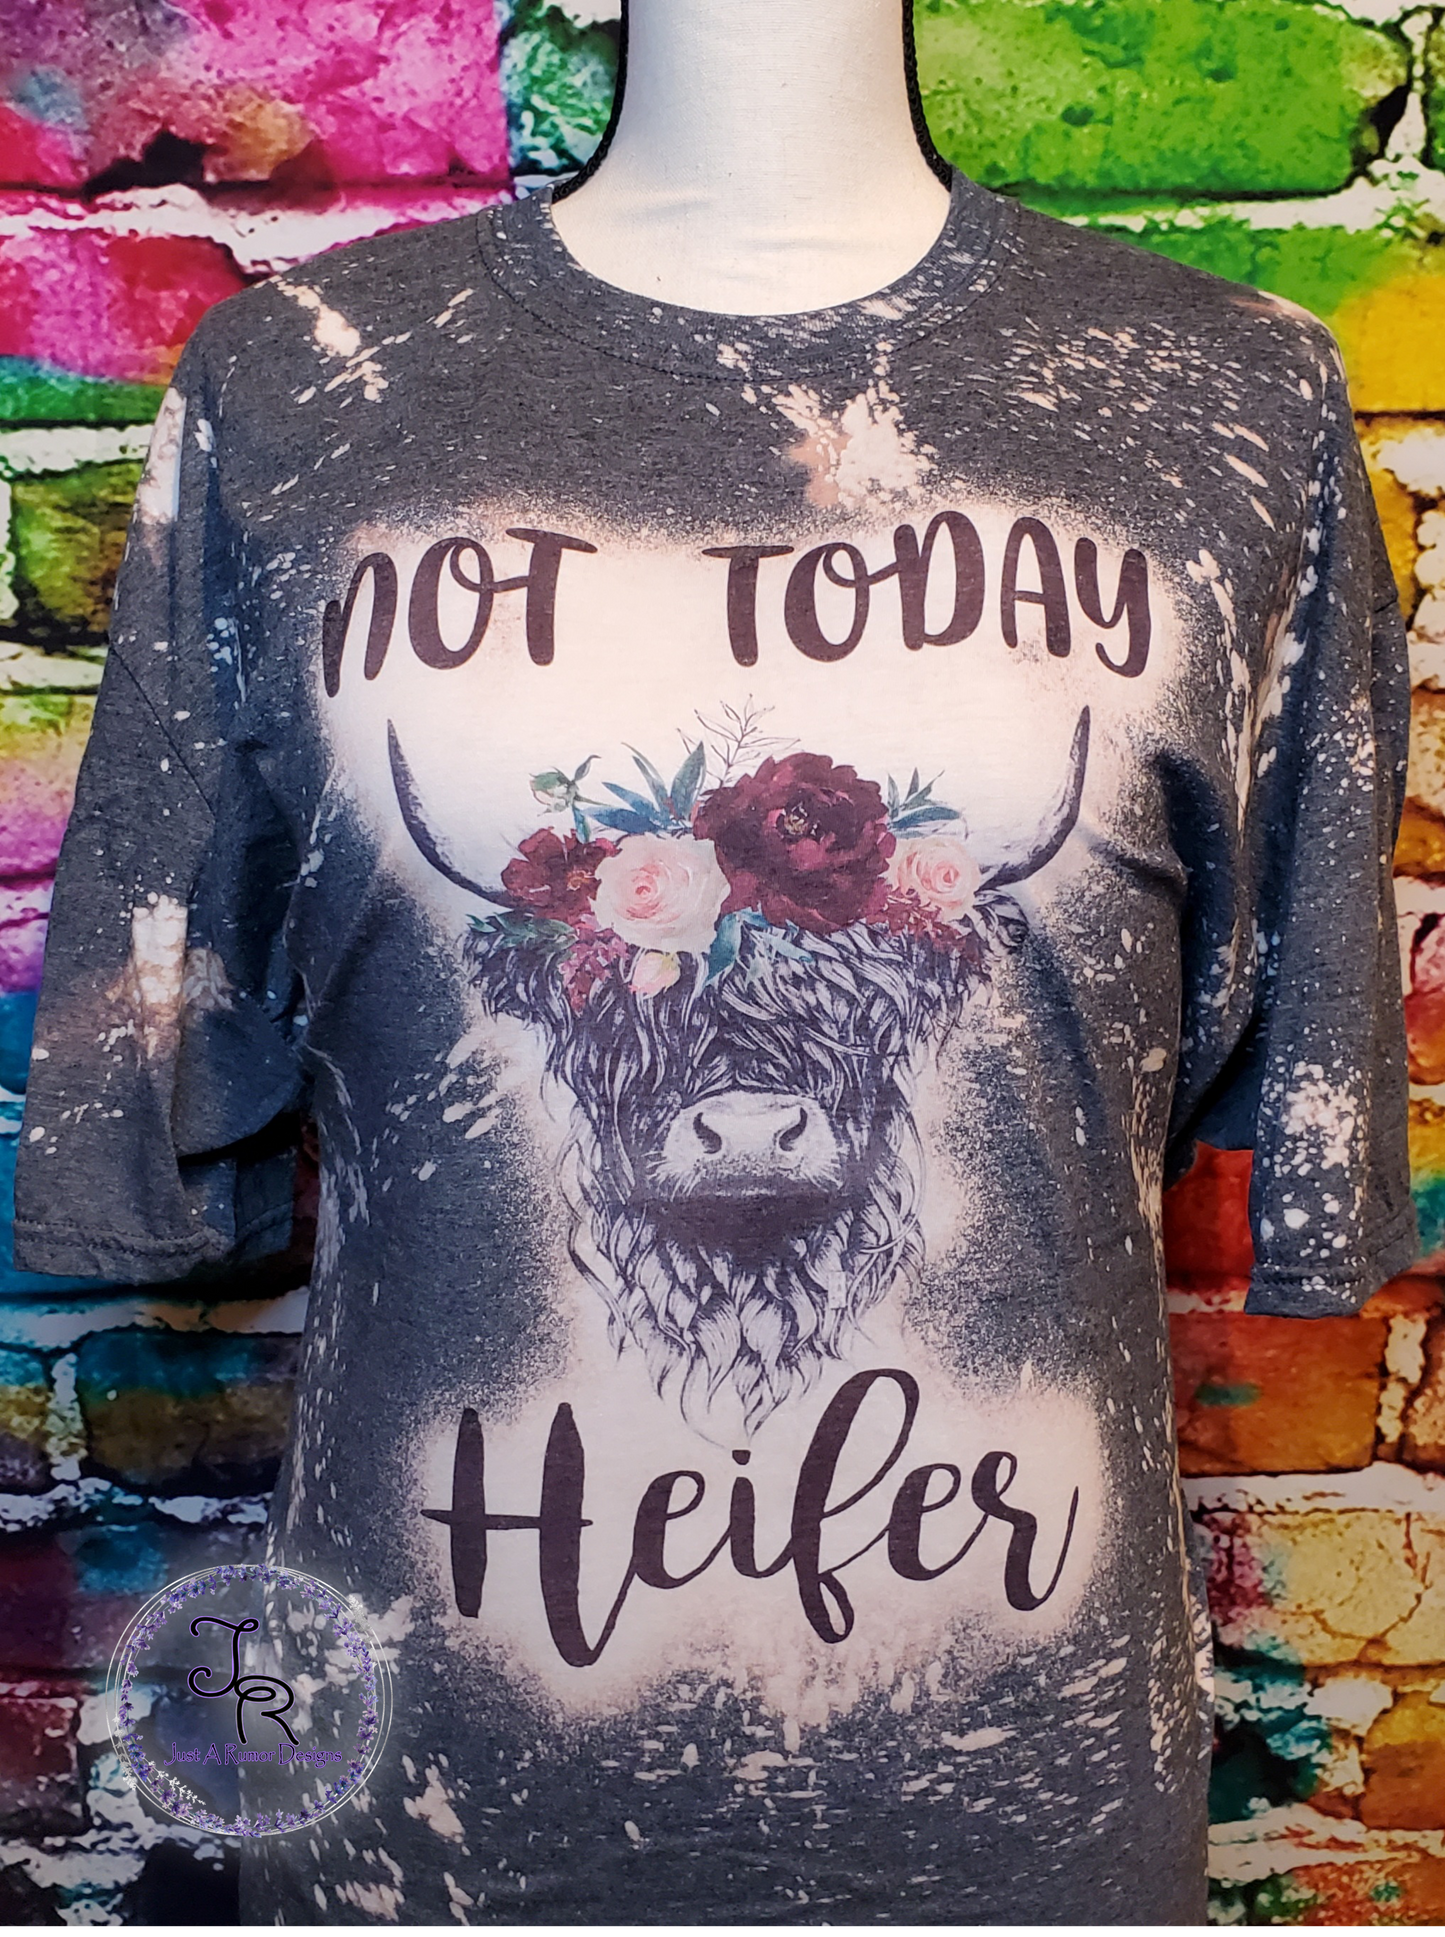 Not Today Heifer Shirt